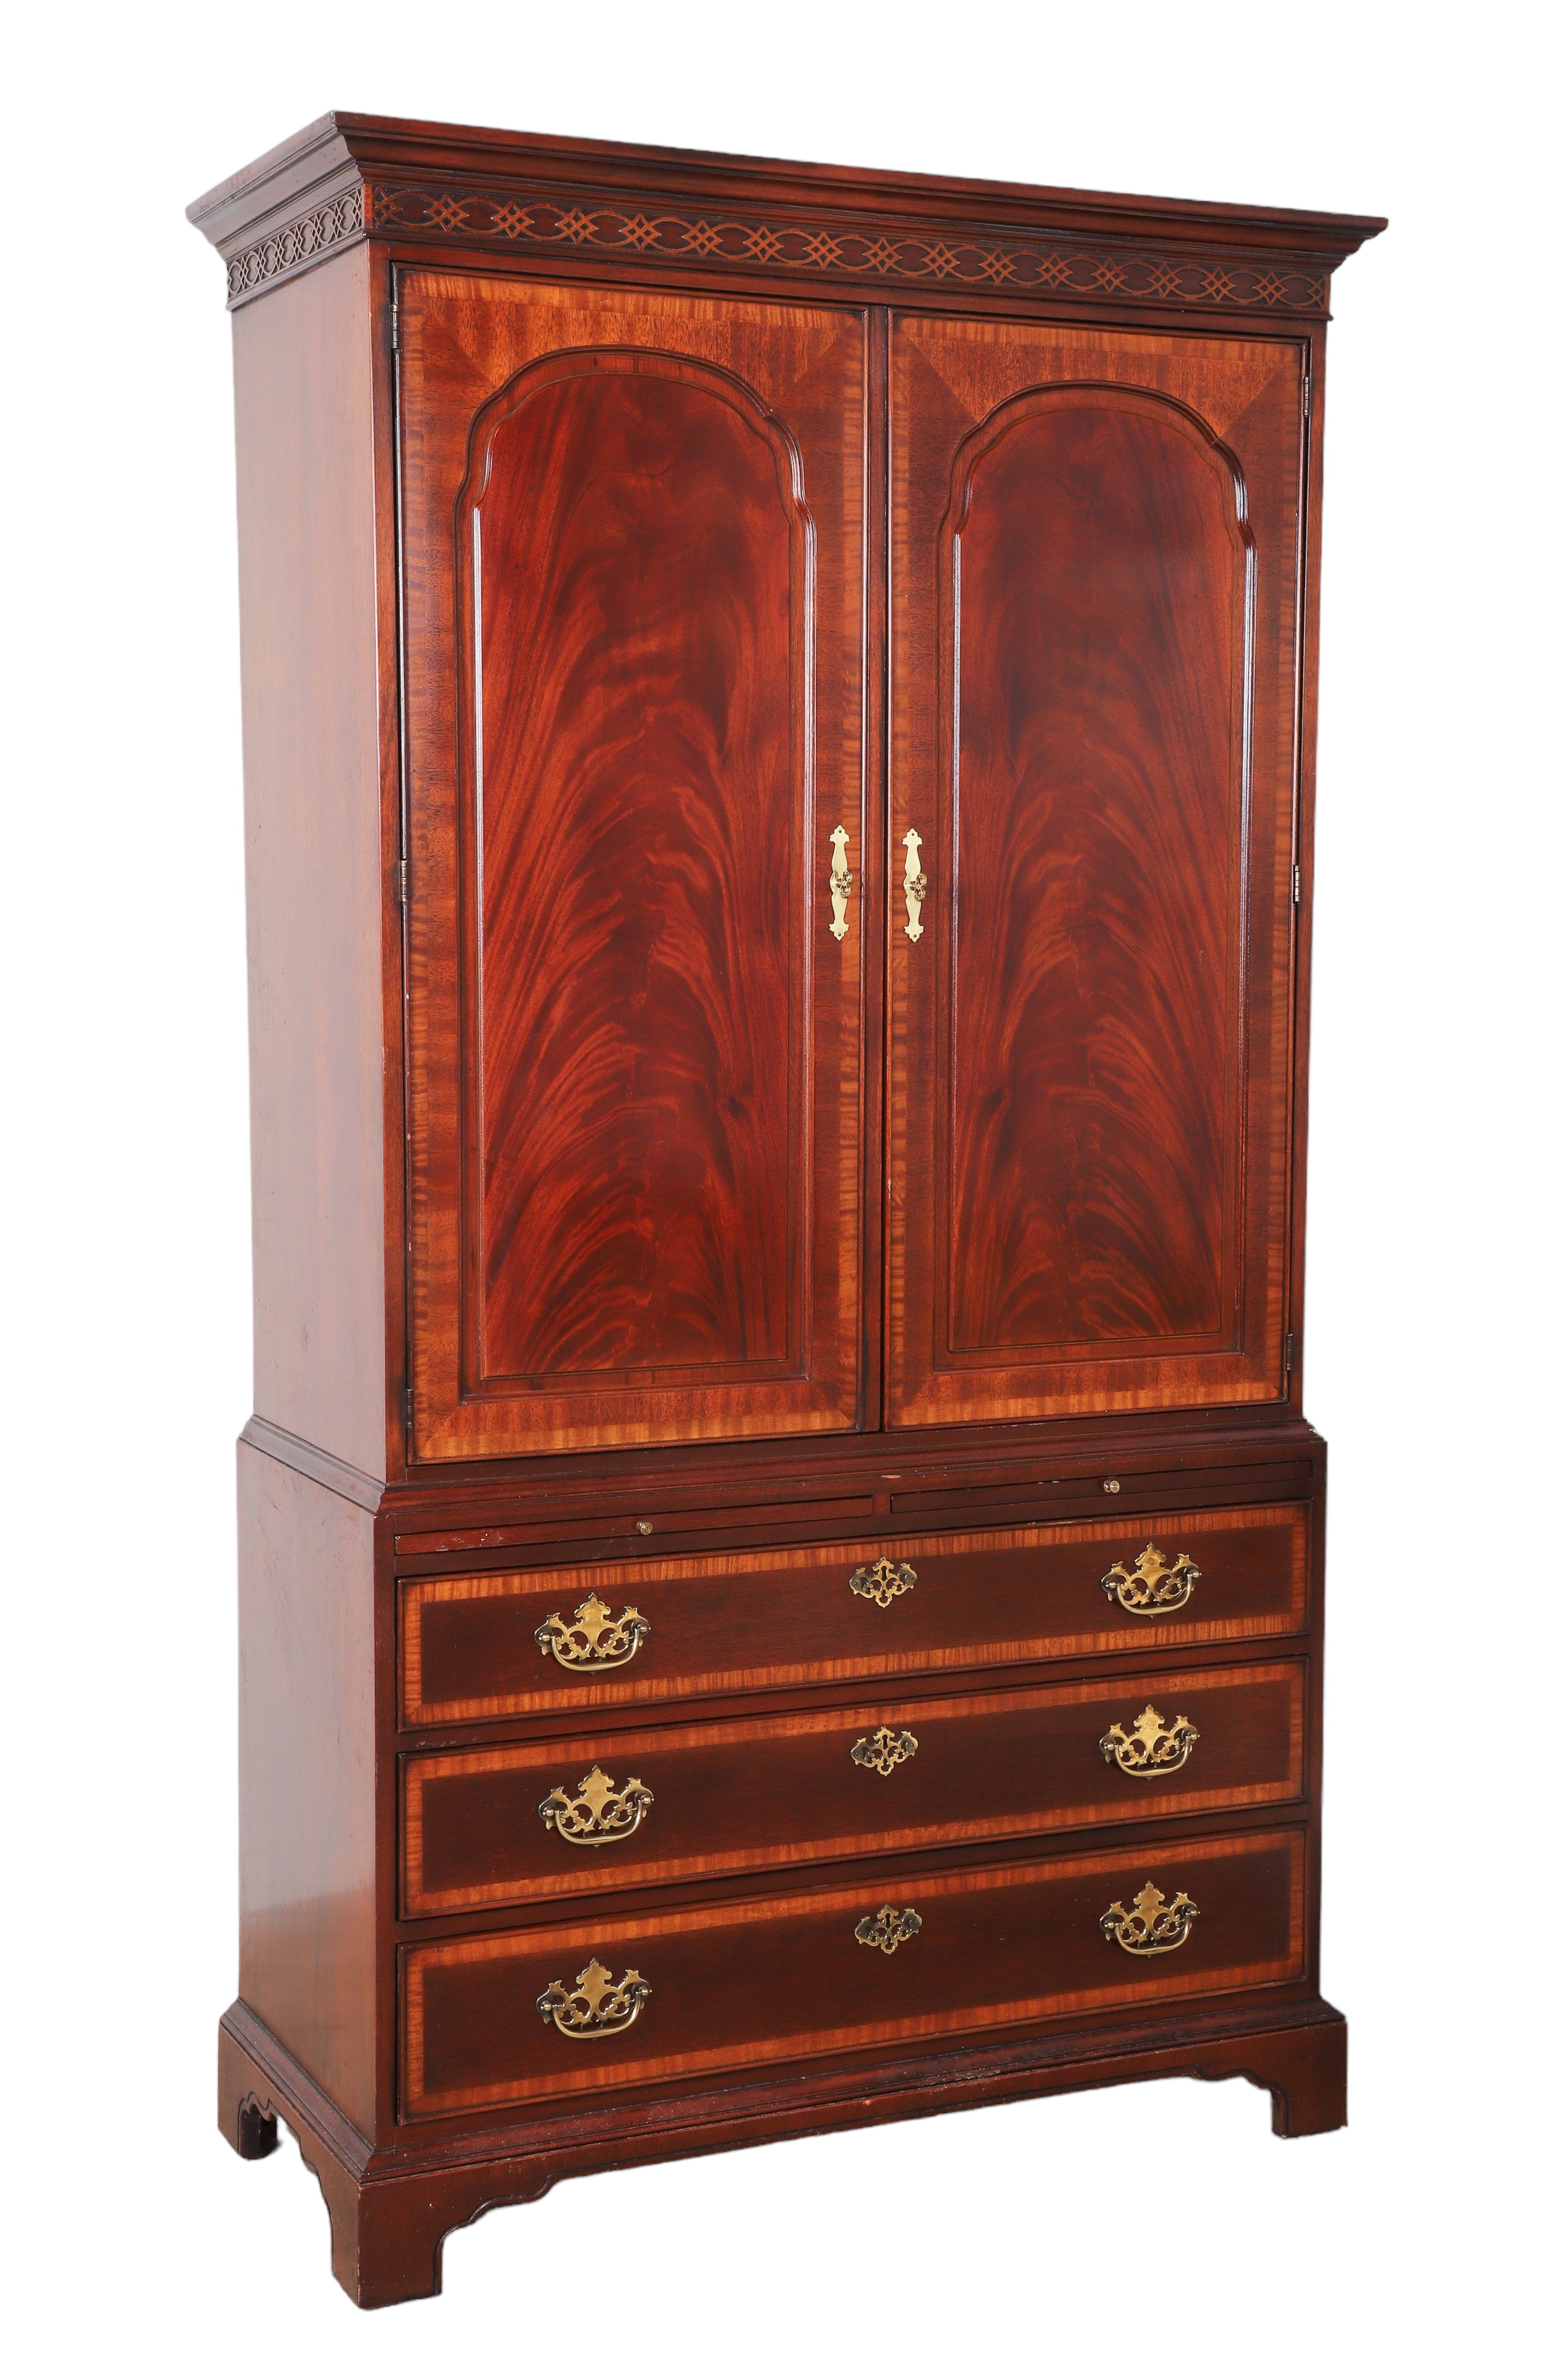 Drexel mahogany 1-pc wardrobe, interior